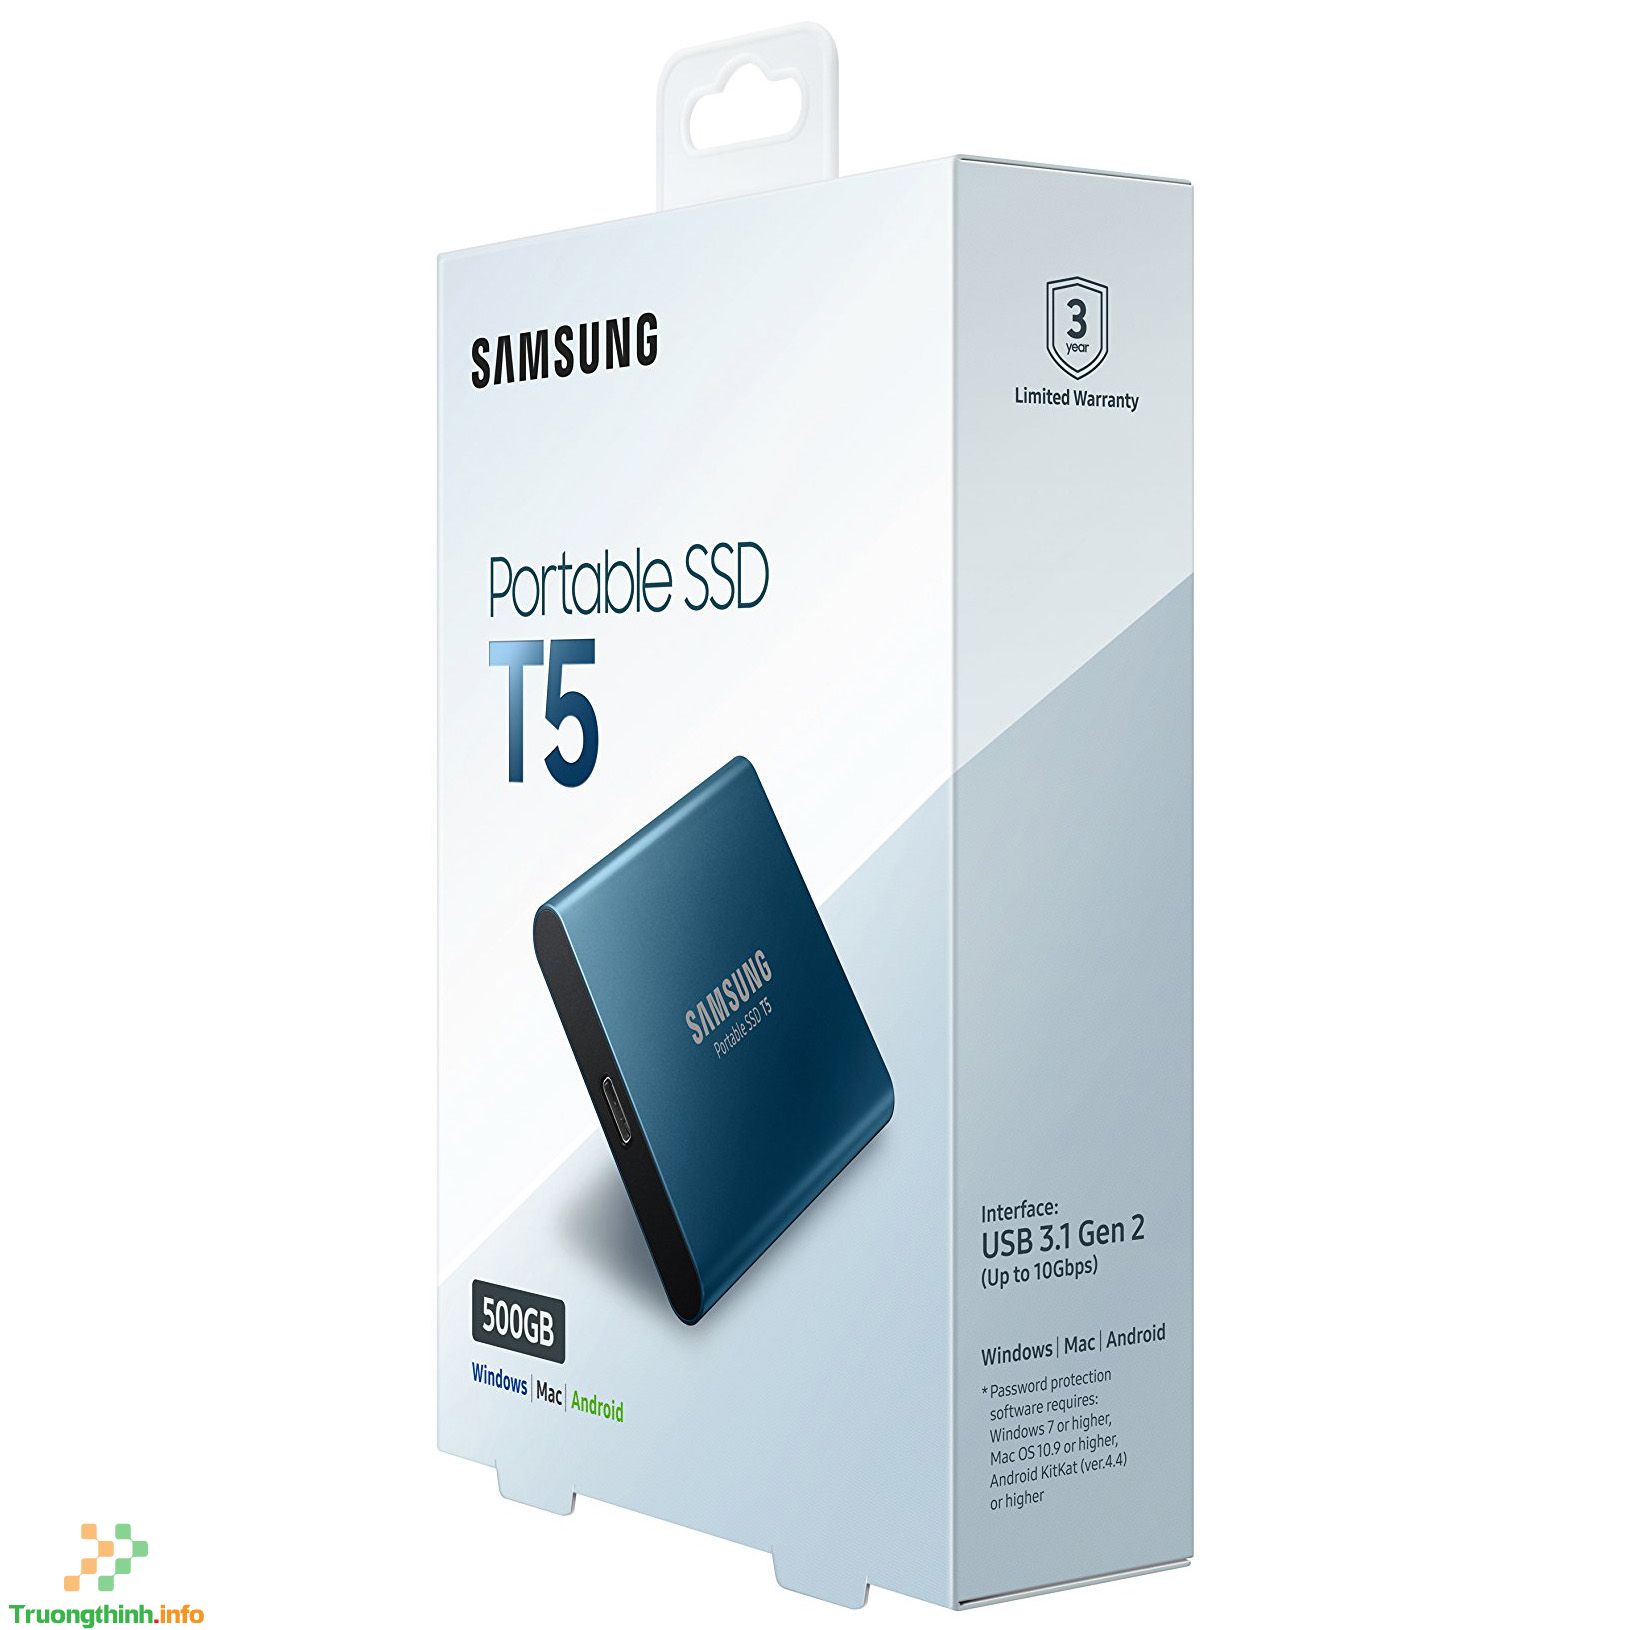 Top 10 Địa Chỉ Bán Ổ cứng SSD Samsung Giá Rẻ Nhất Ở Quận 5